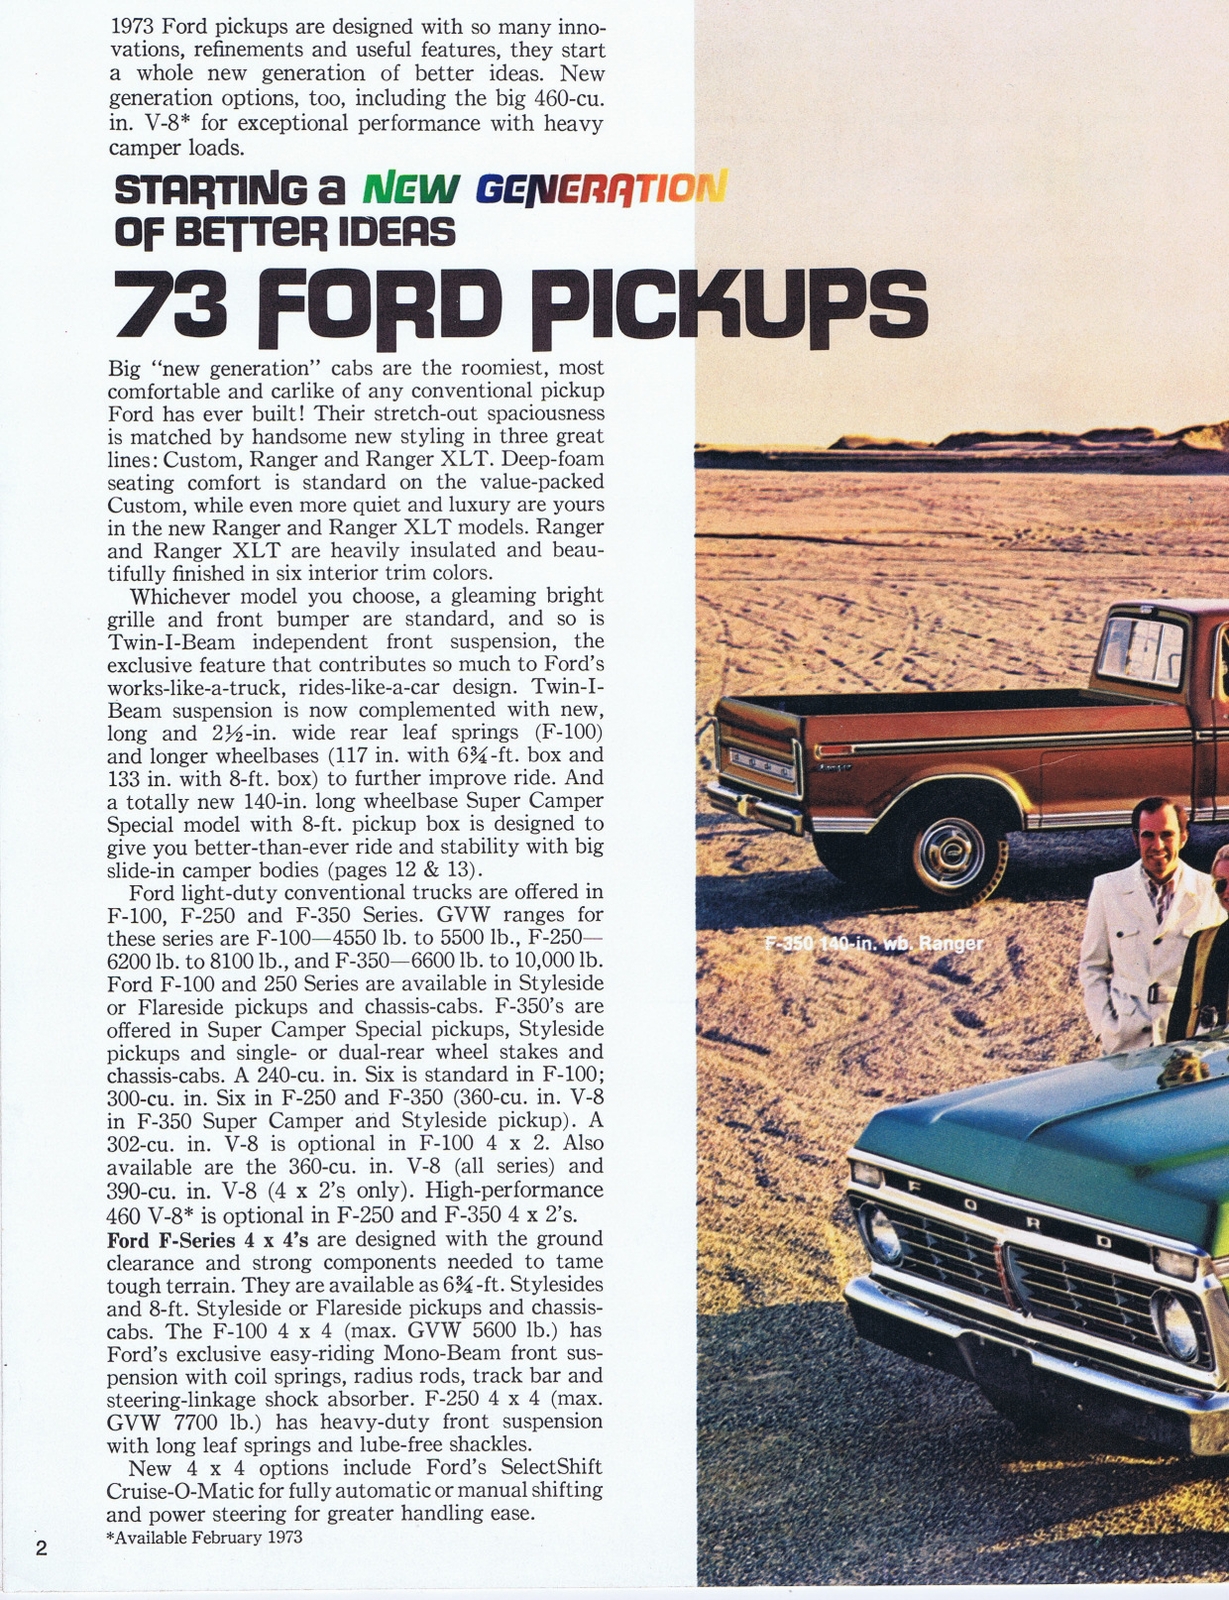 n_1973 Ford Pickups-02.jpg